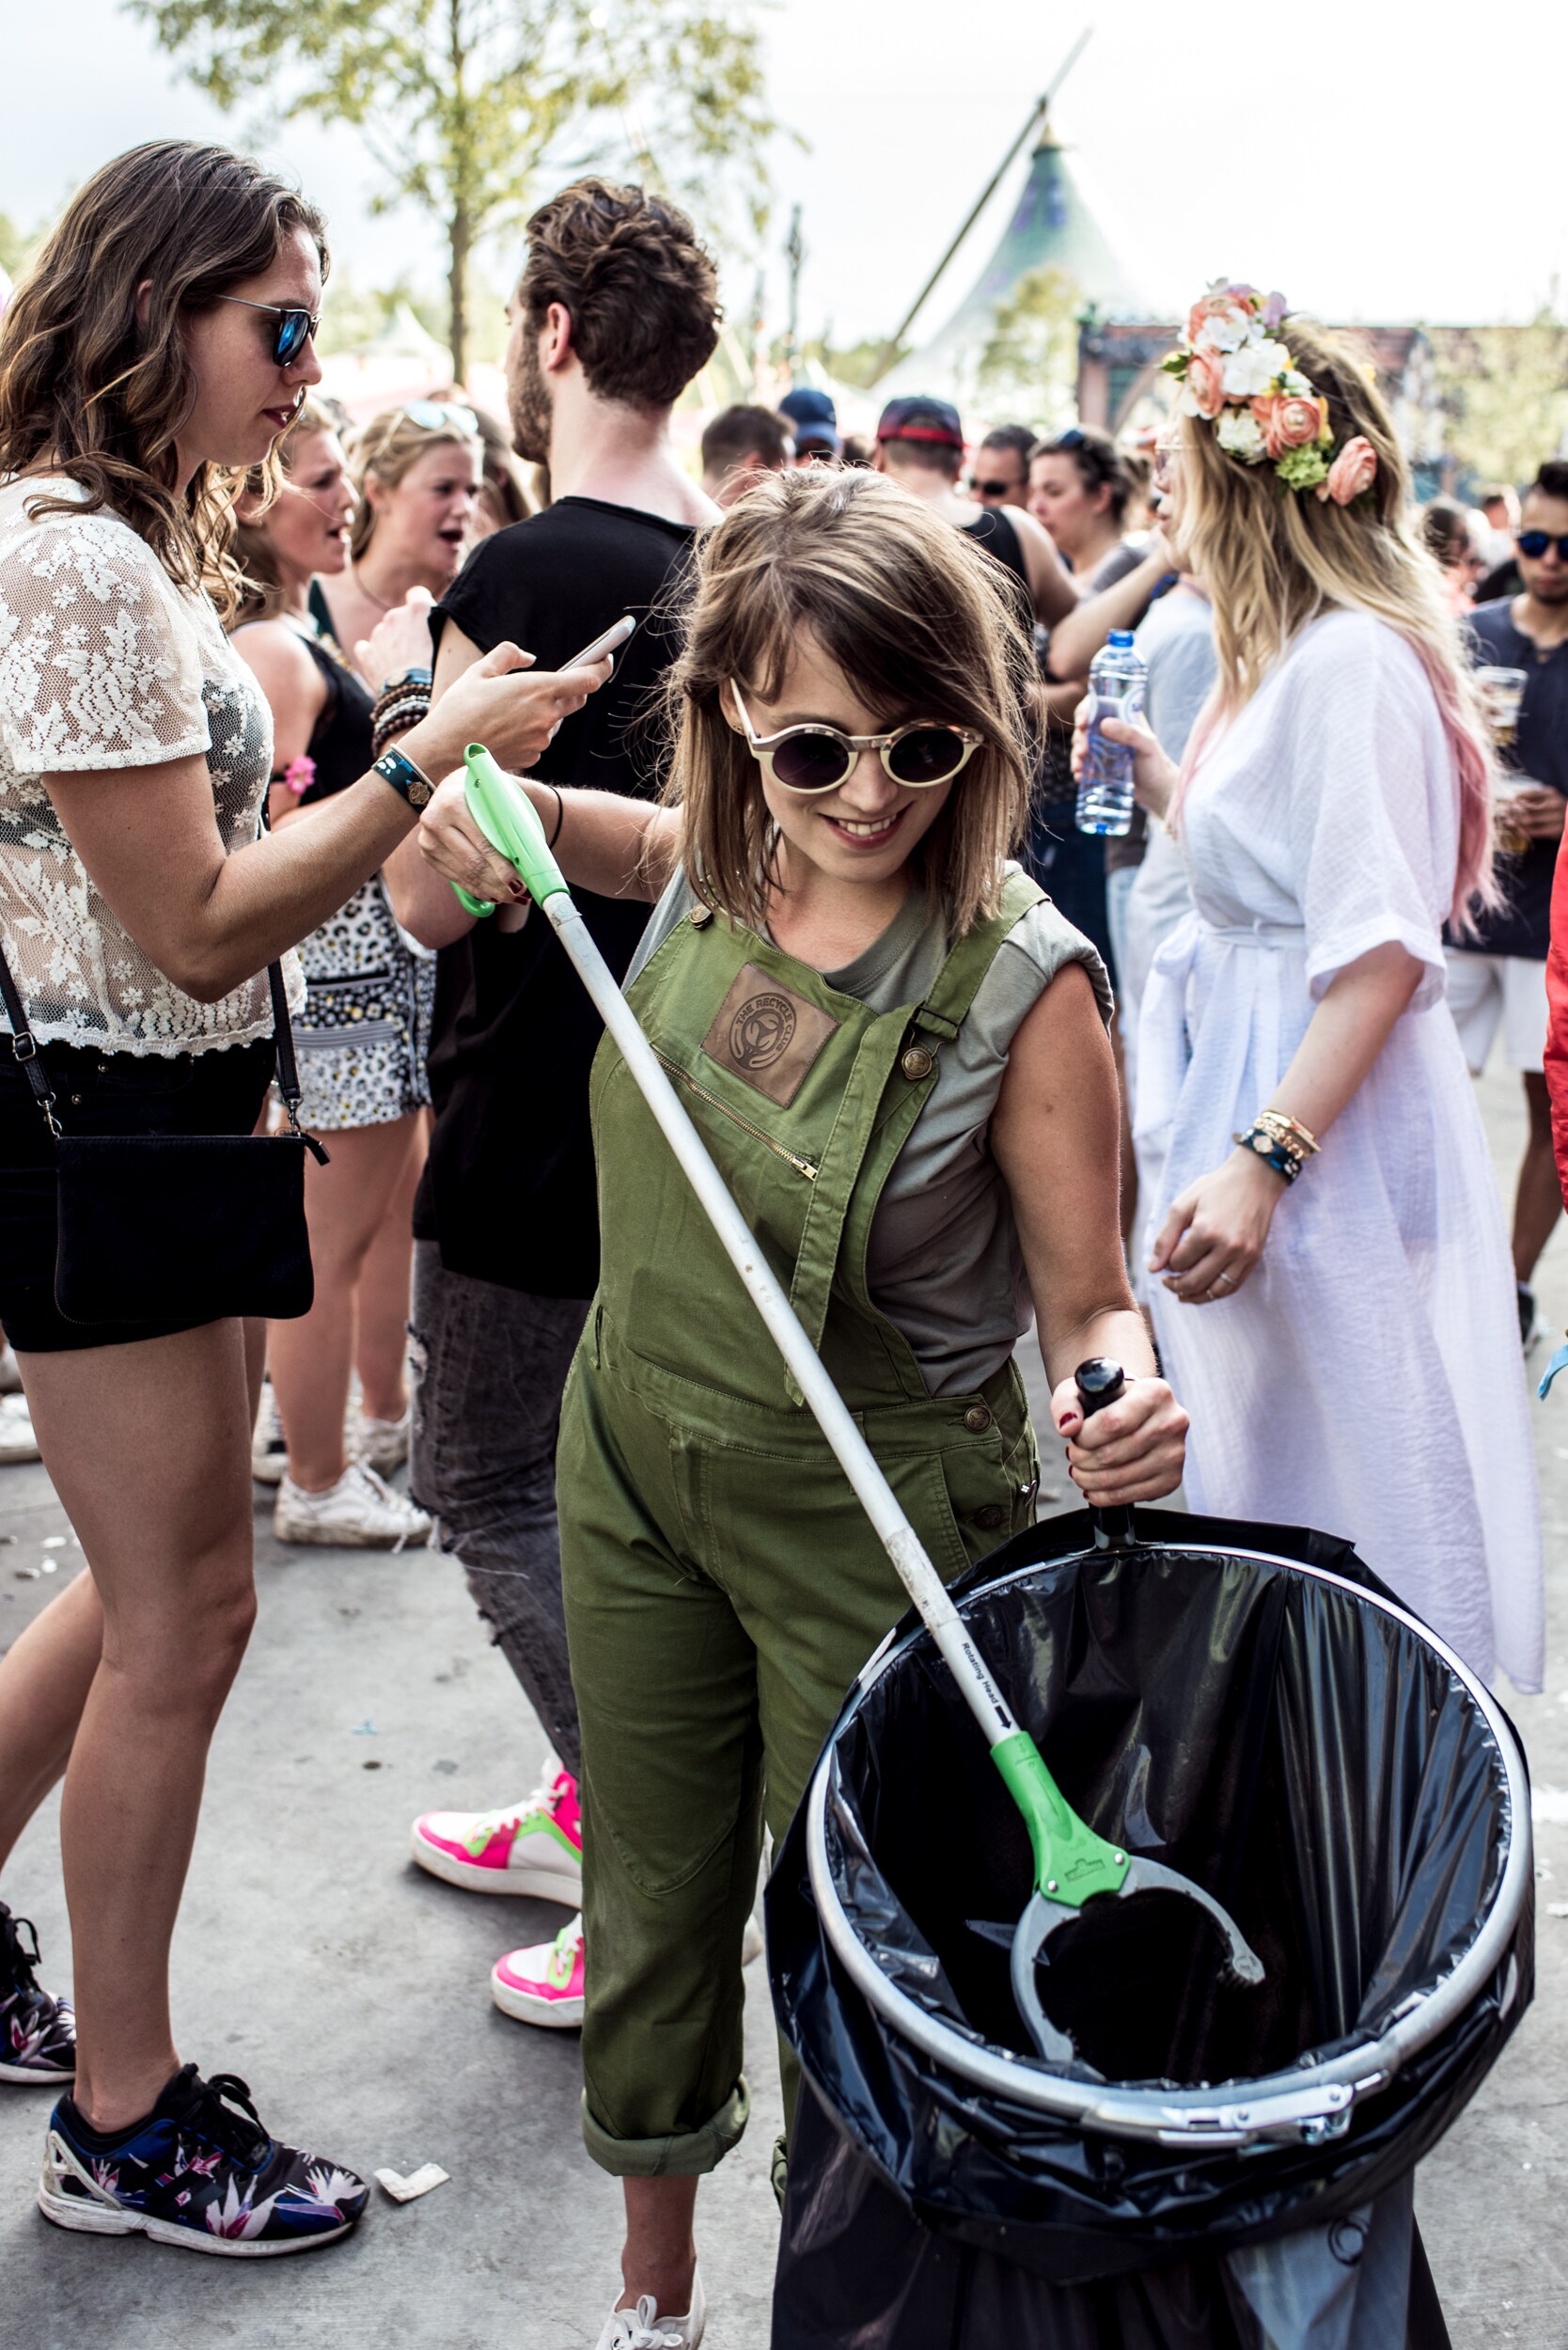 Trashtalk met het Recycle Team: ‘Wij prikken peuken, jullie pakken pinten’